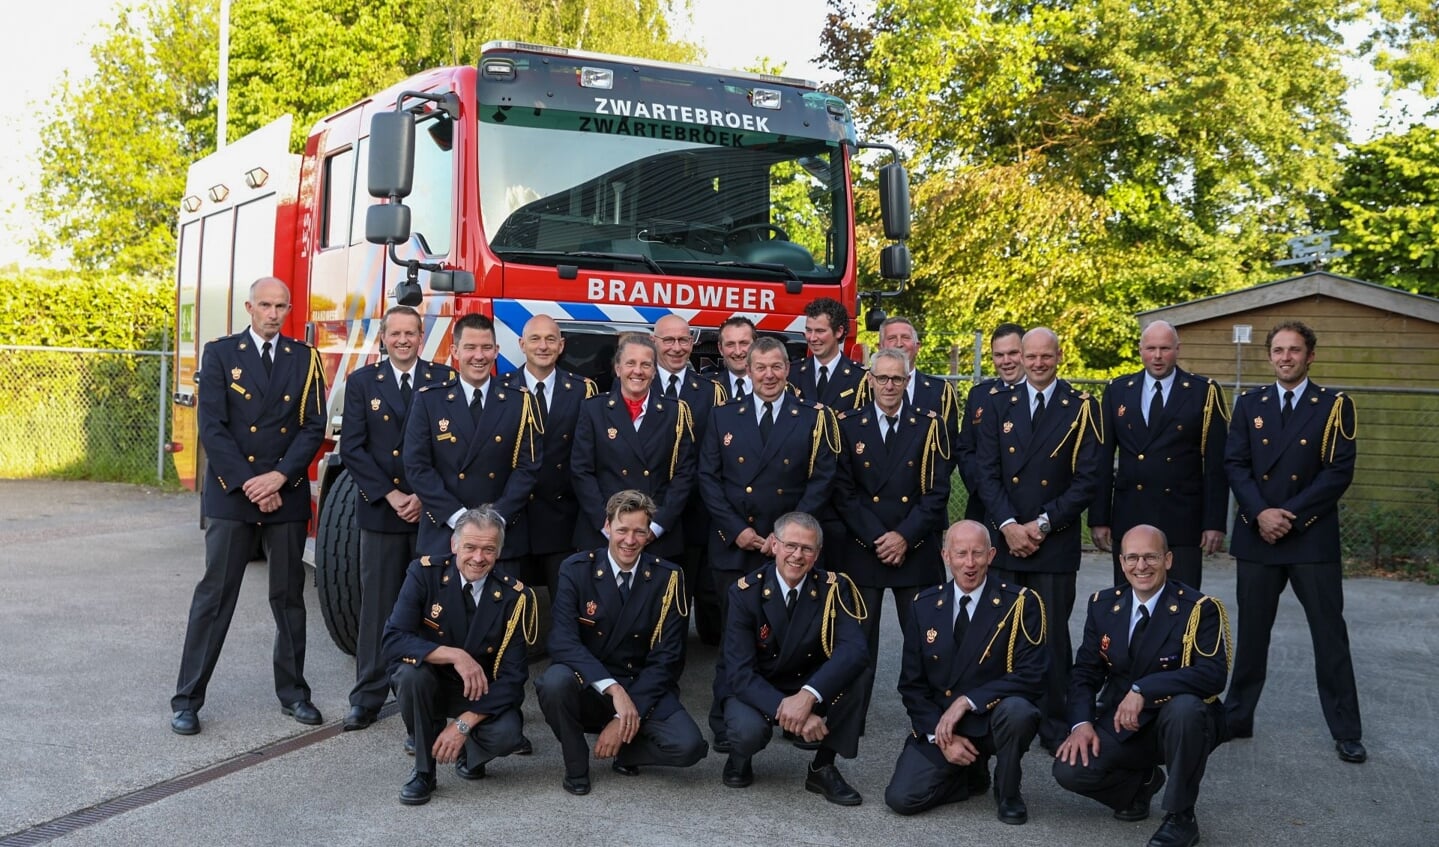 Het brandweerkorps van Zwartebroek.